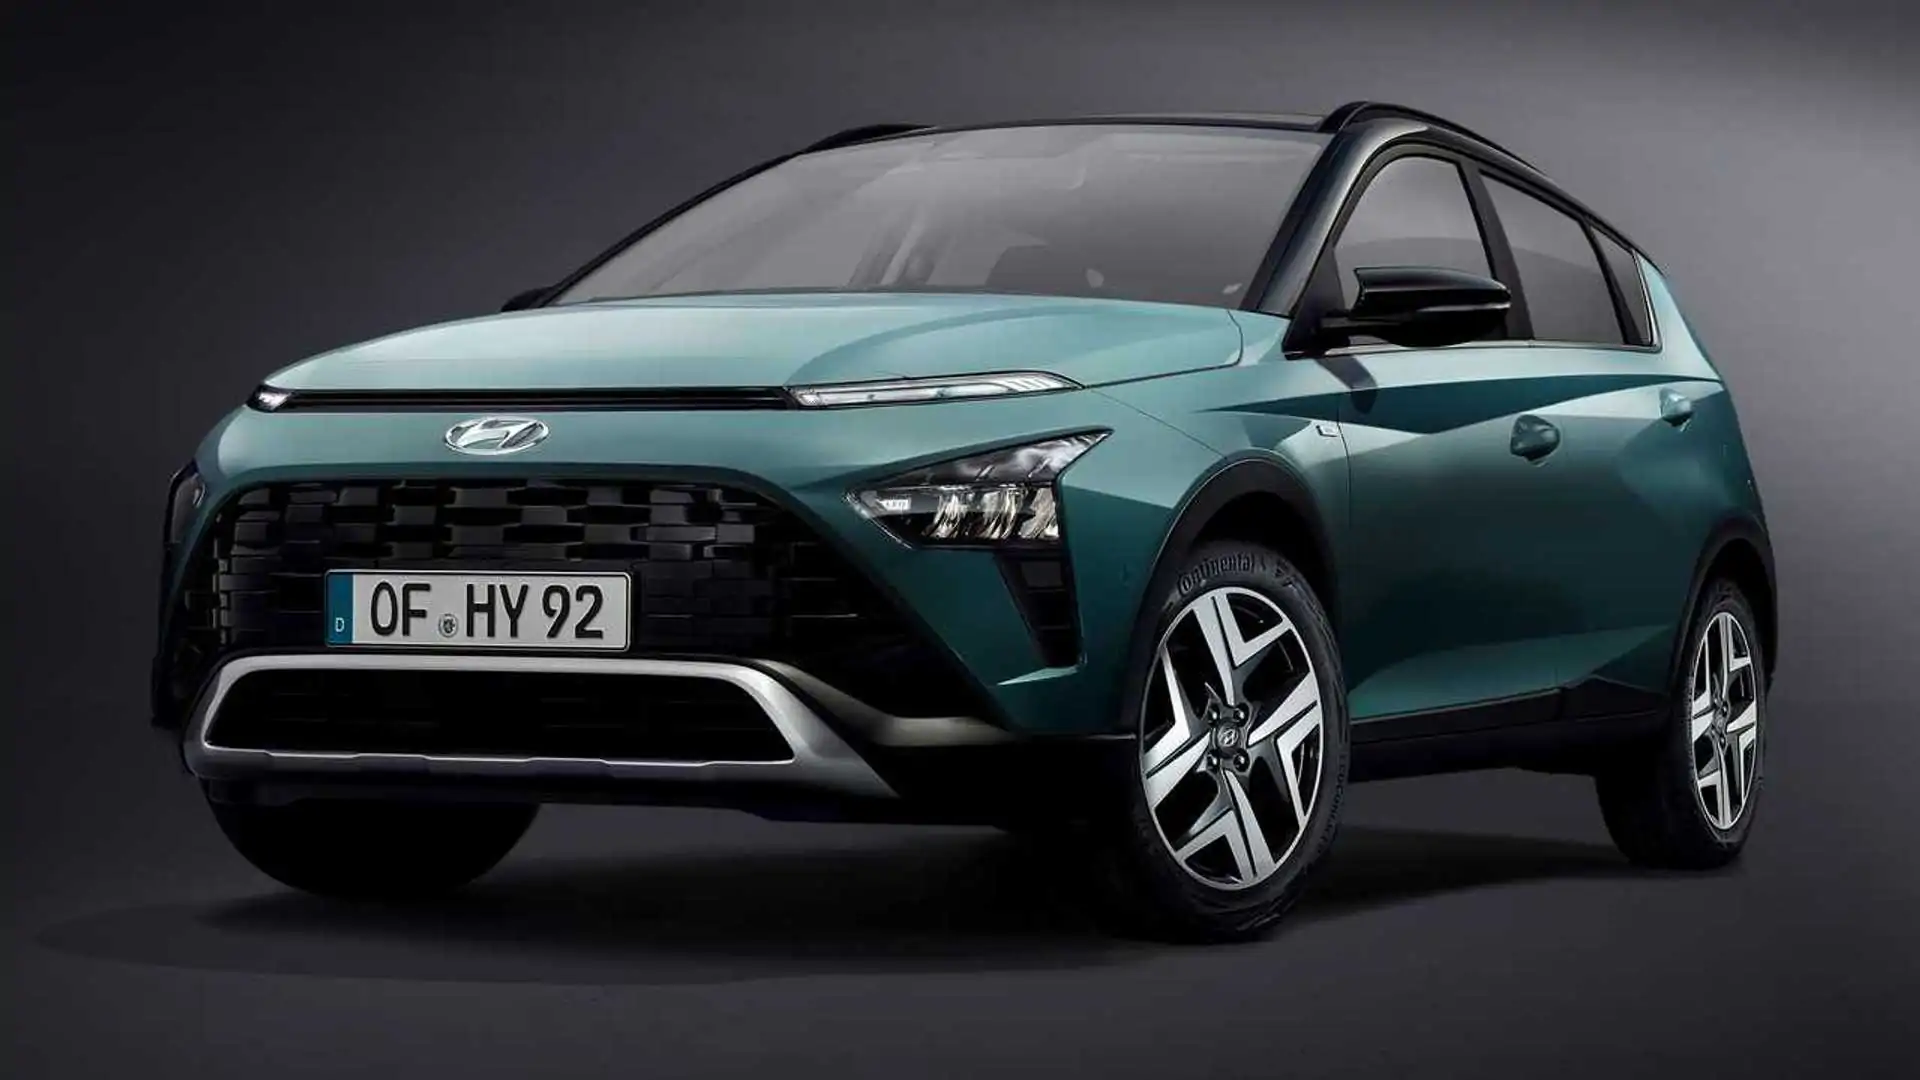 538 Bin TL’ye Sıfır Hyundai Bayon Fırsatı! İndirimli Otomobil Satışı Başladı